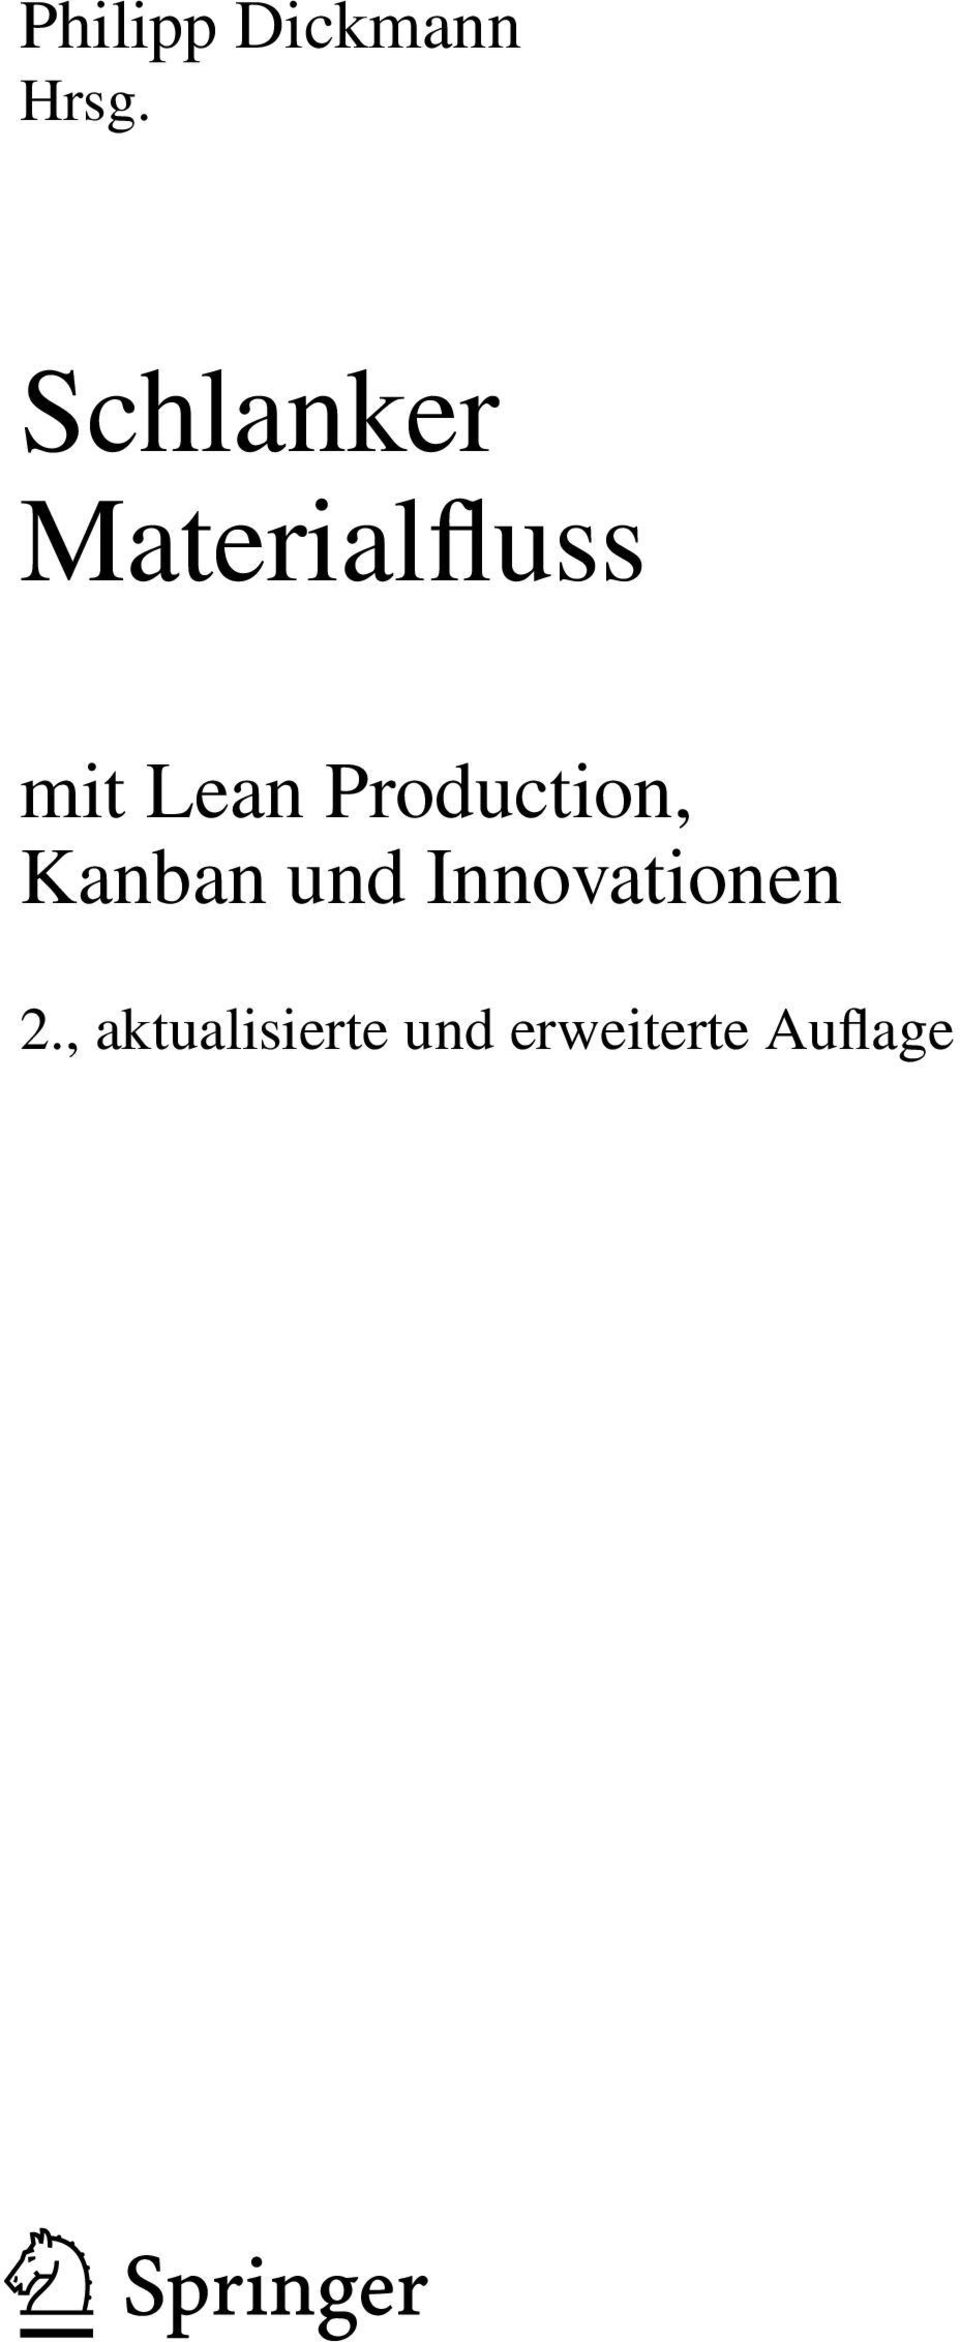 Production, Kanban und